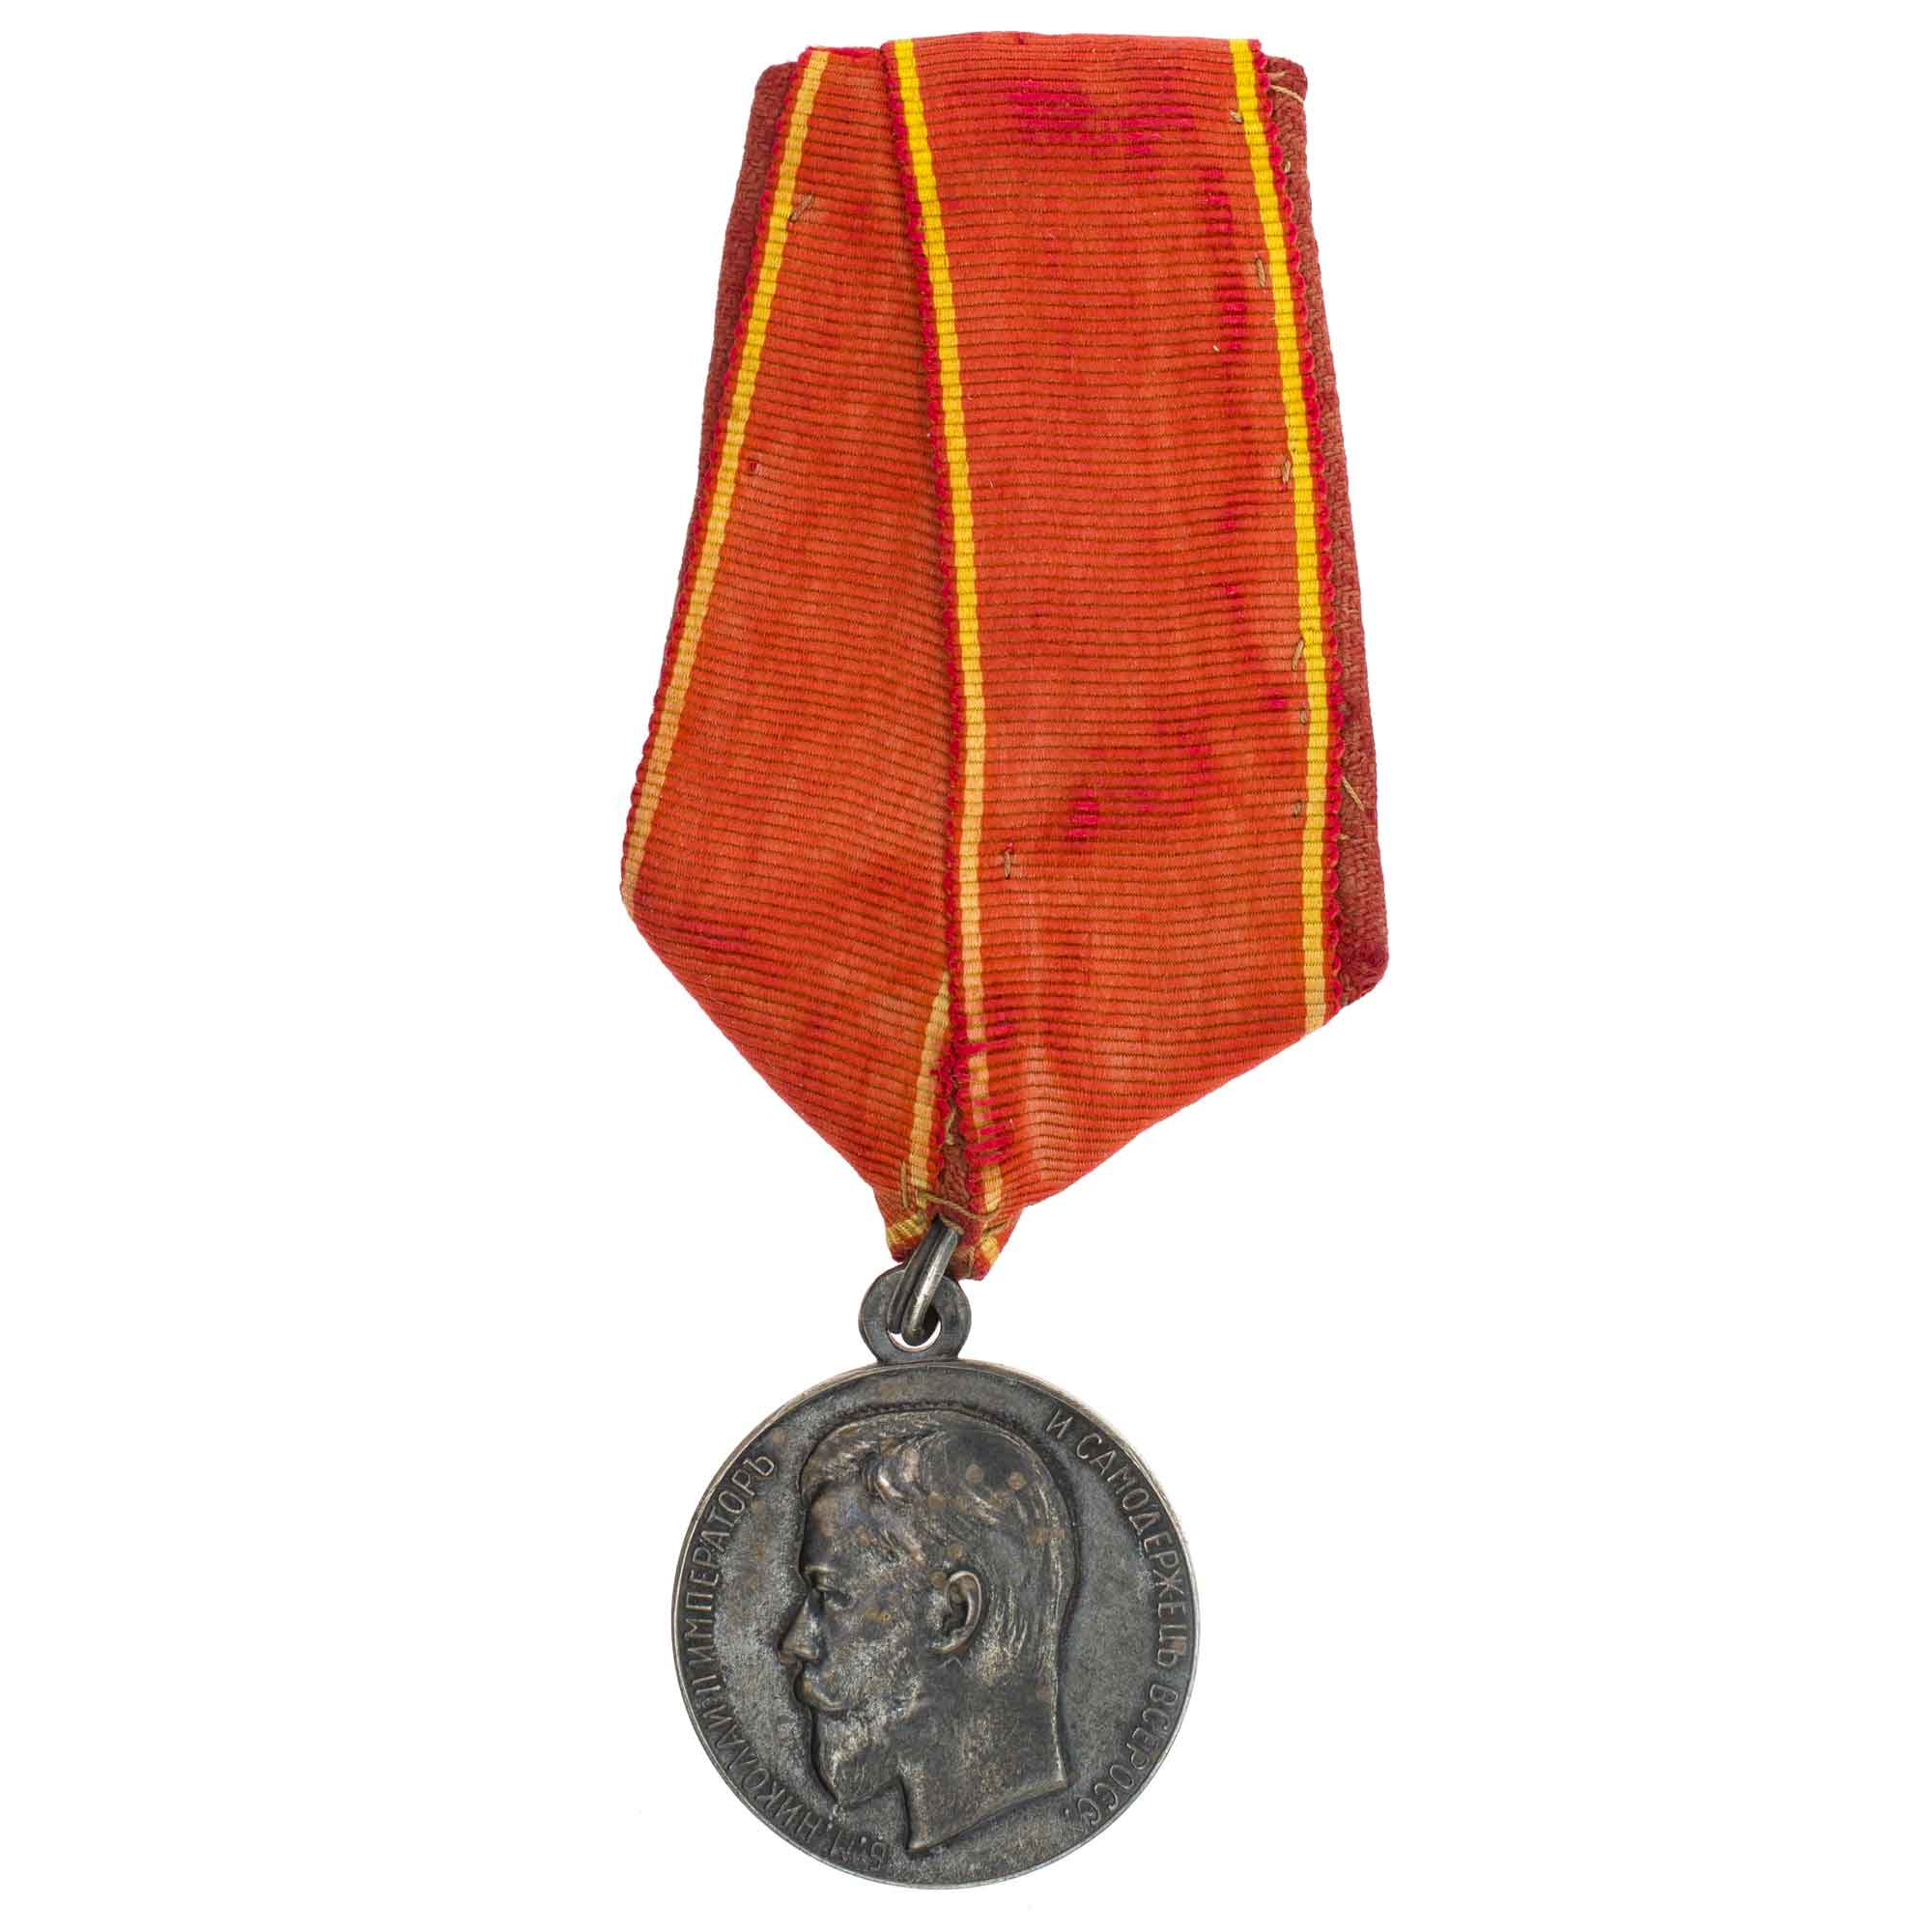 Медаль "За Усердие" с портретом Императора Николая II (образца 1895 г) на колодке с лентой ордена Св. Анны (для сестёр милосердия. Серебро.